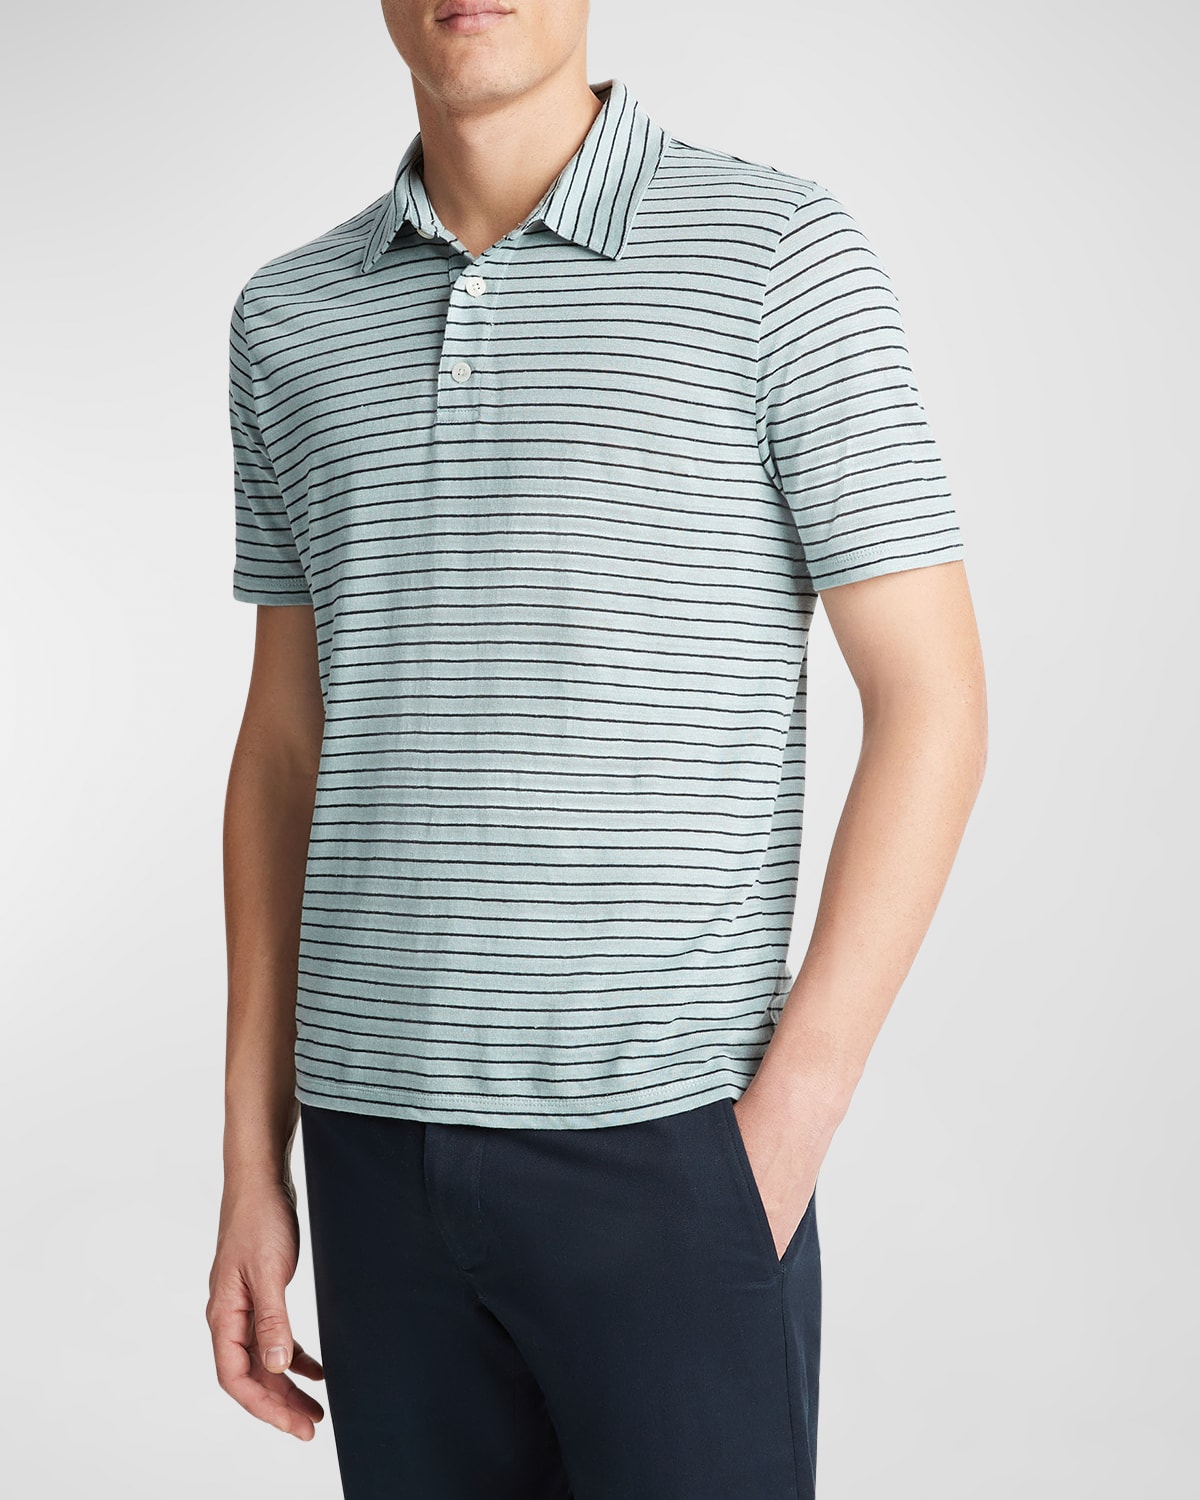 Men's Striped Linen Polo Shirt